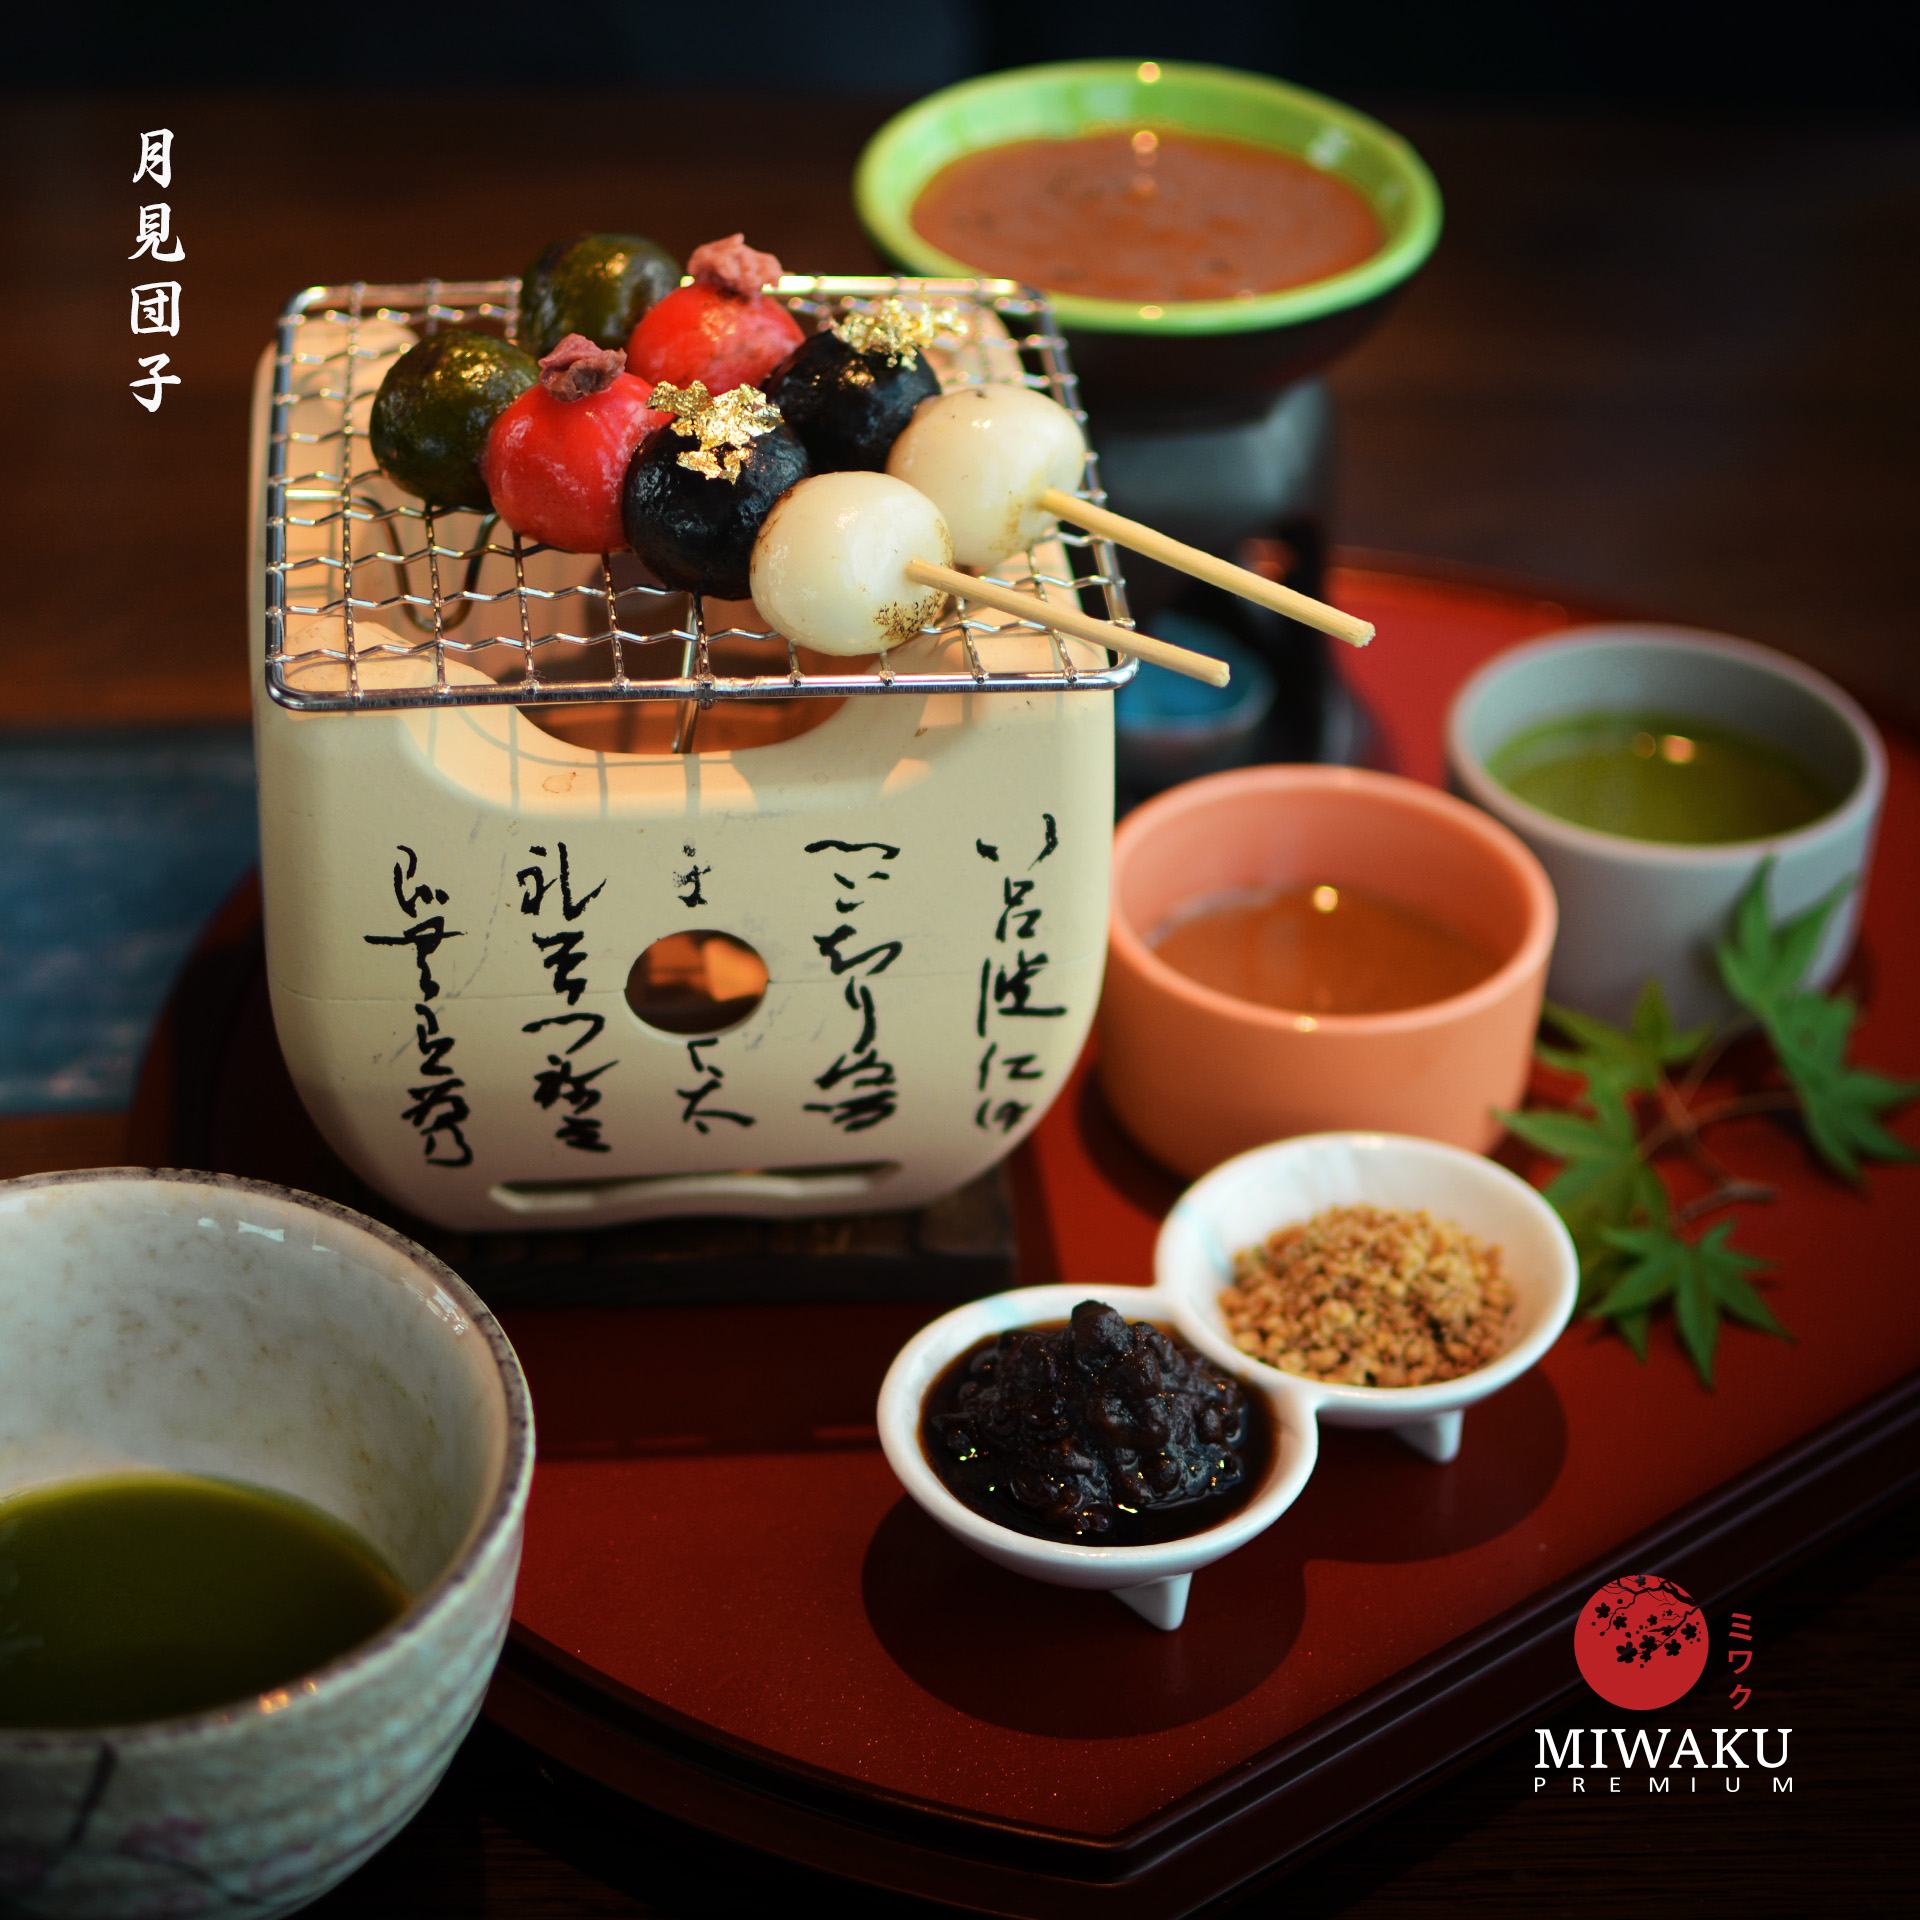 Miwaku Premium - Japanese Fusion Cuisine